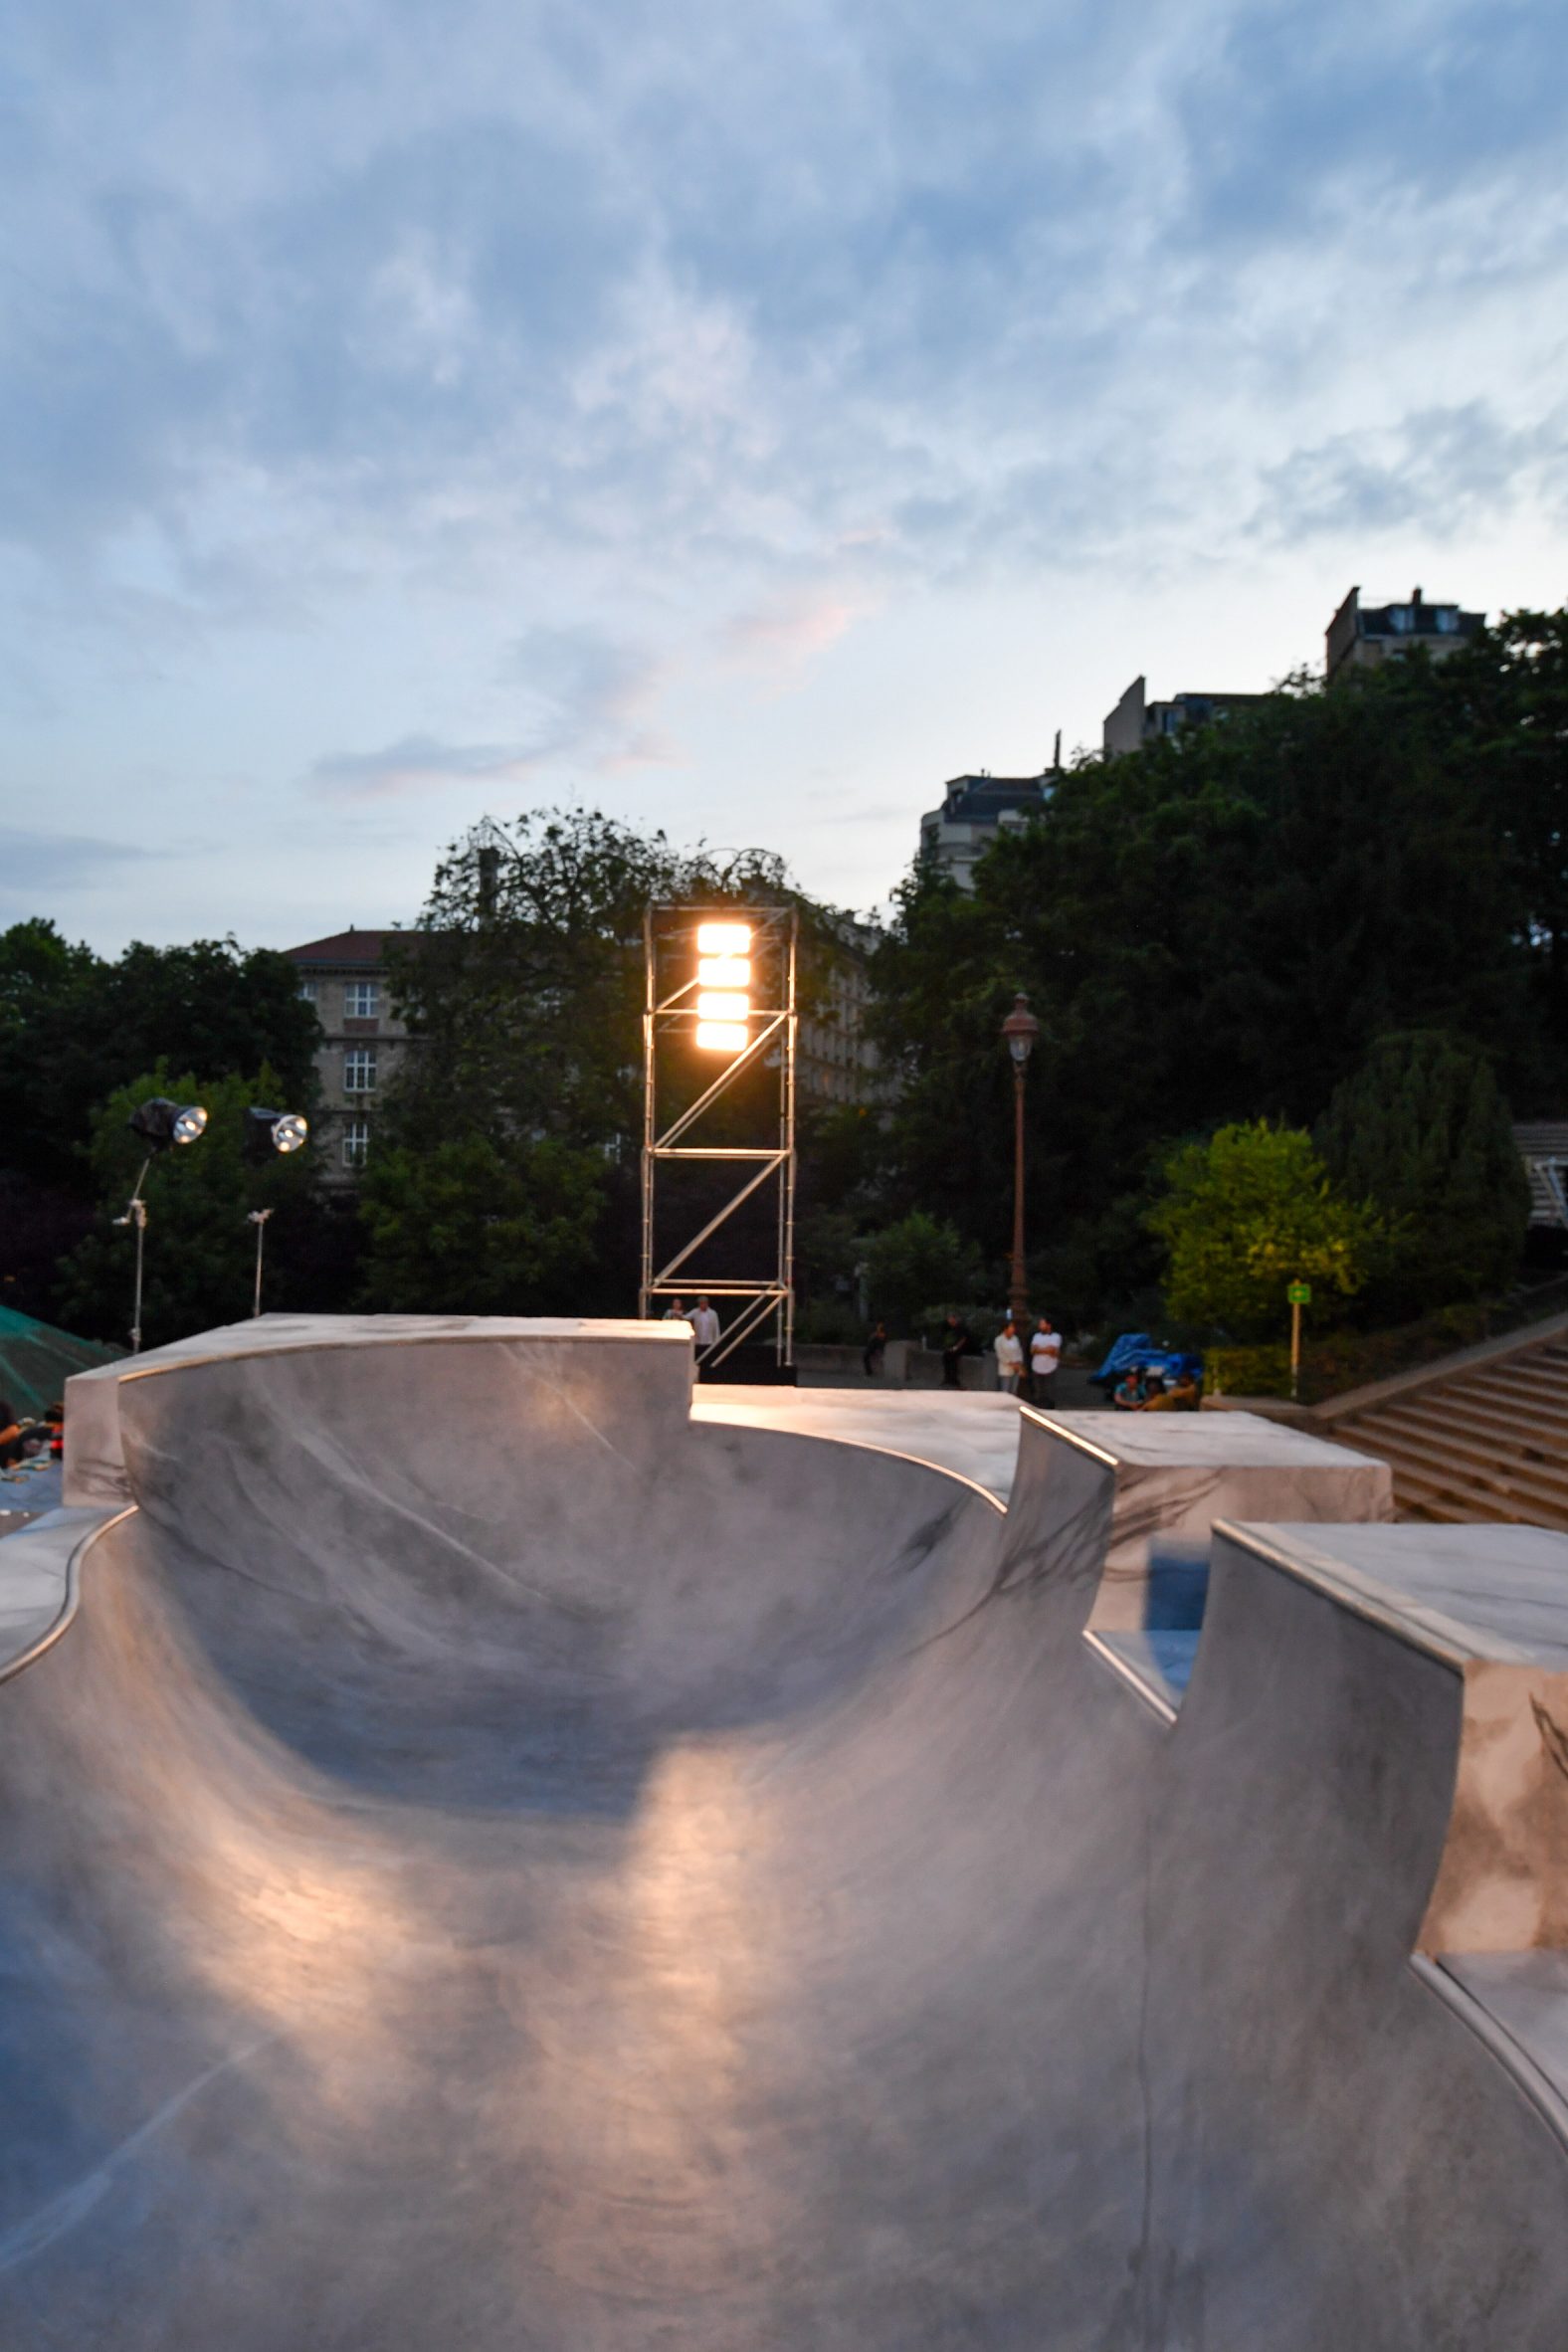 Concrete skate bowl in Paris